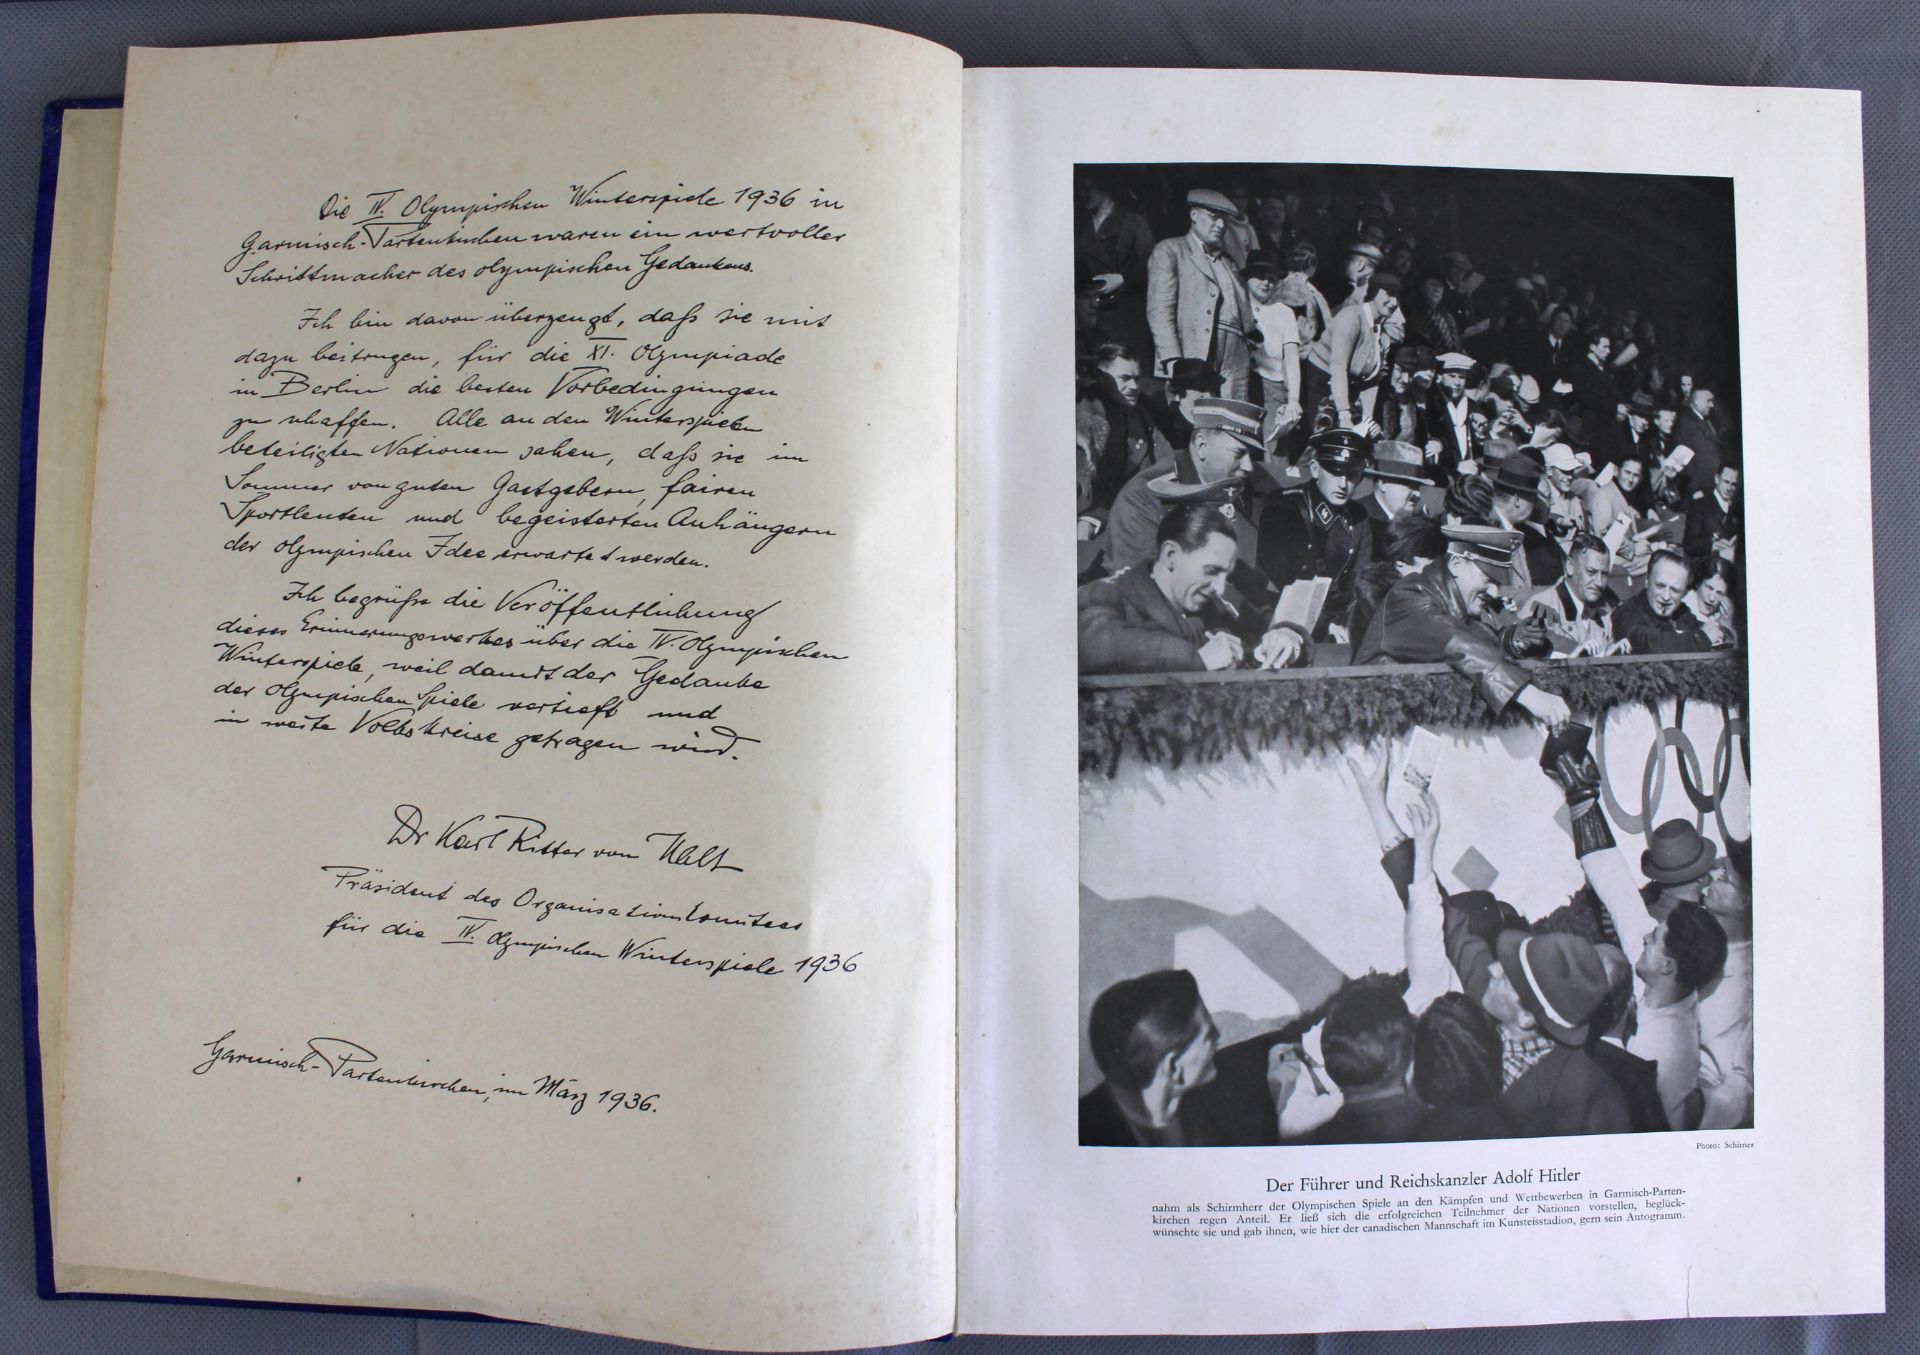 Olympia 1936- Bd.1 olymp. Winterspiele, Cigaretten-Bilderdienst Altona-Bahrenfeld, 127 Seiten - Image 2 of 3